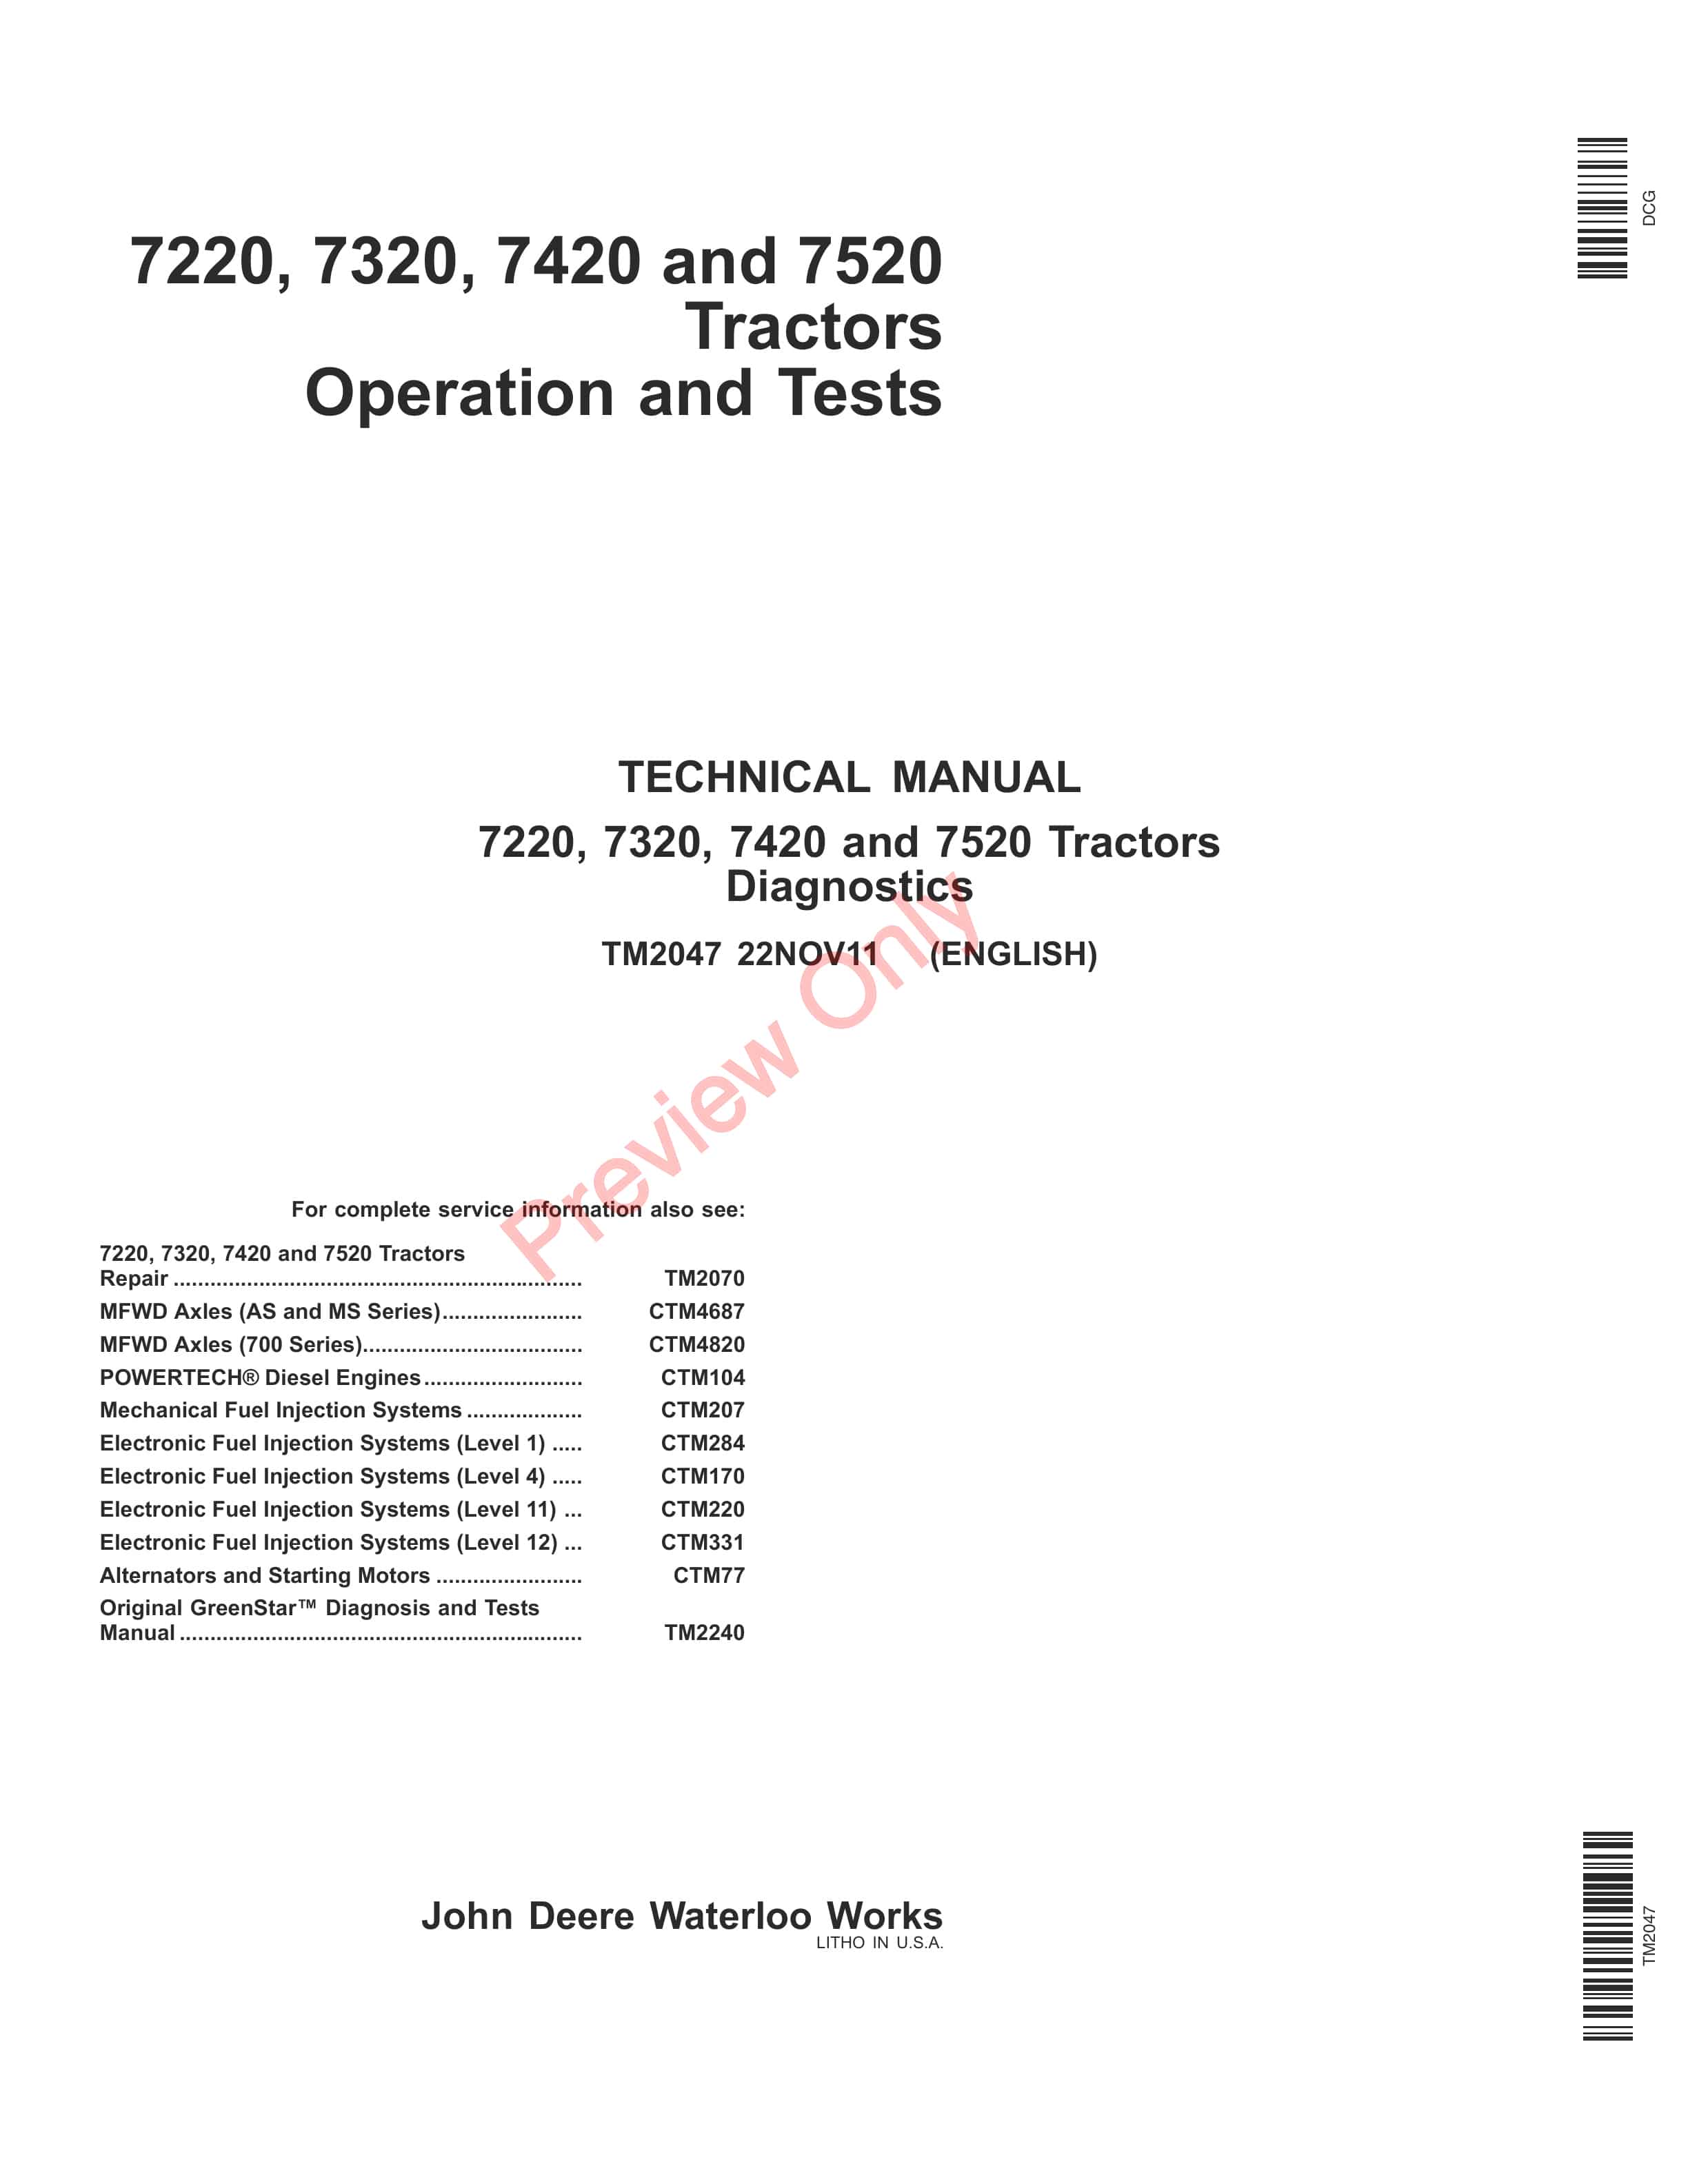 John Deere 7220, 7320, 7420 and 7520 Tractors Technical Manual TM2047 22NOV11-1